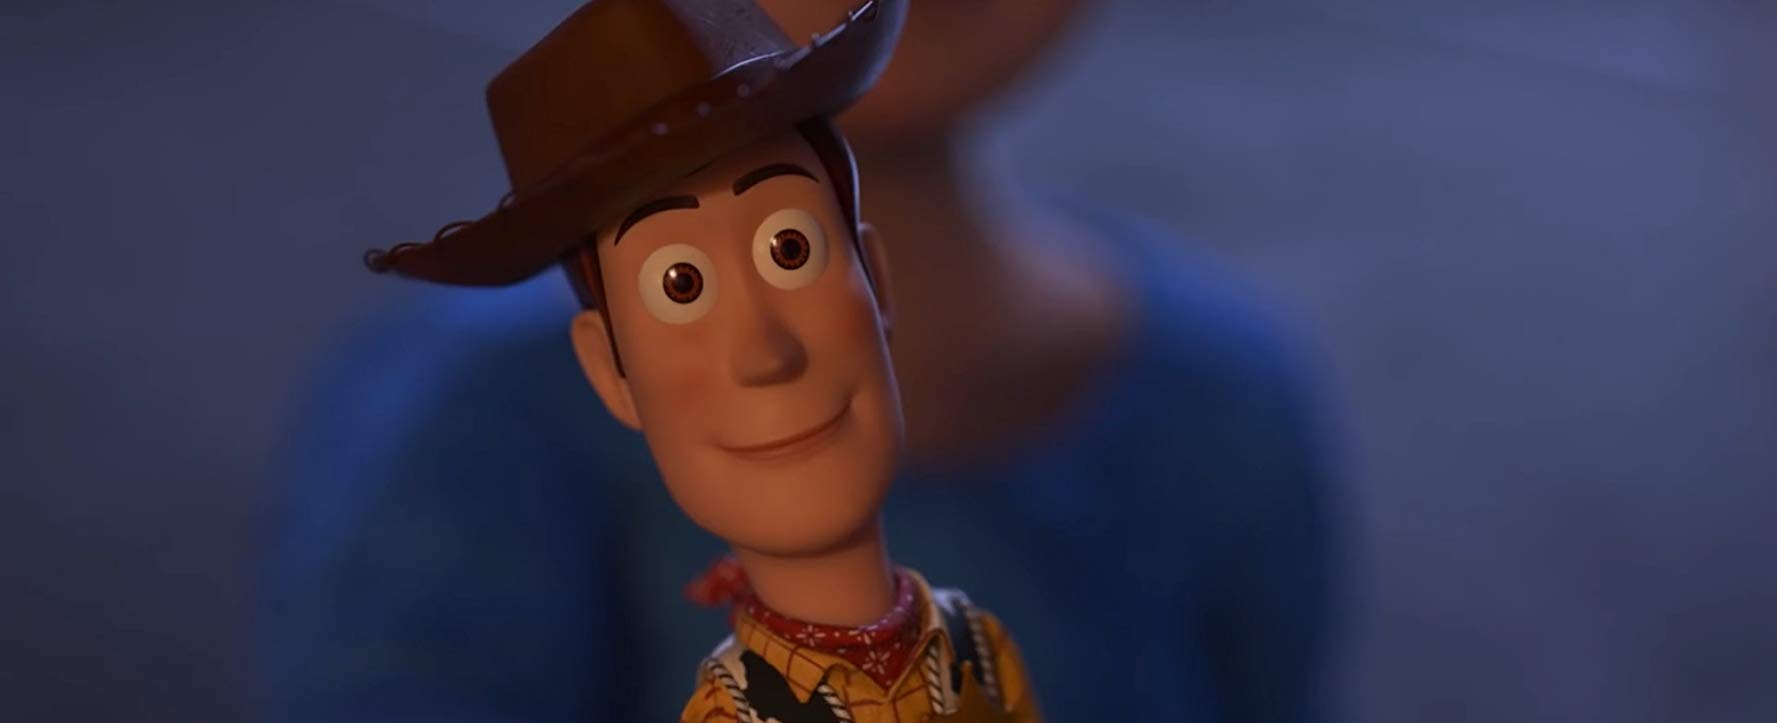 Woody el vaquero en Toy Story 4